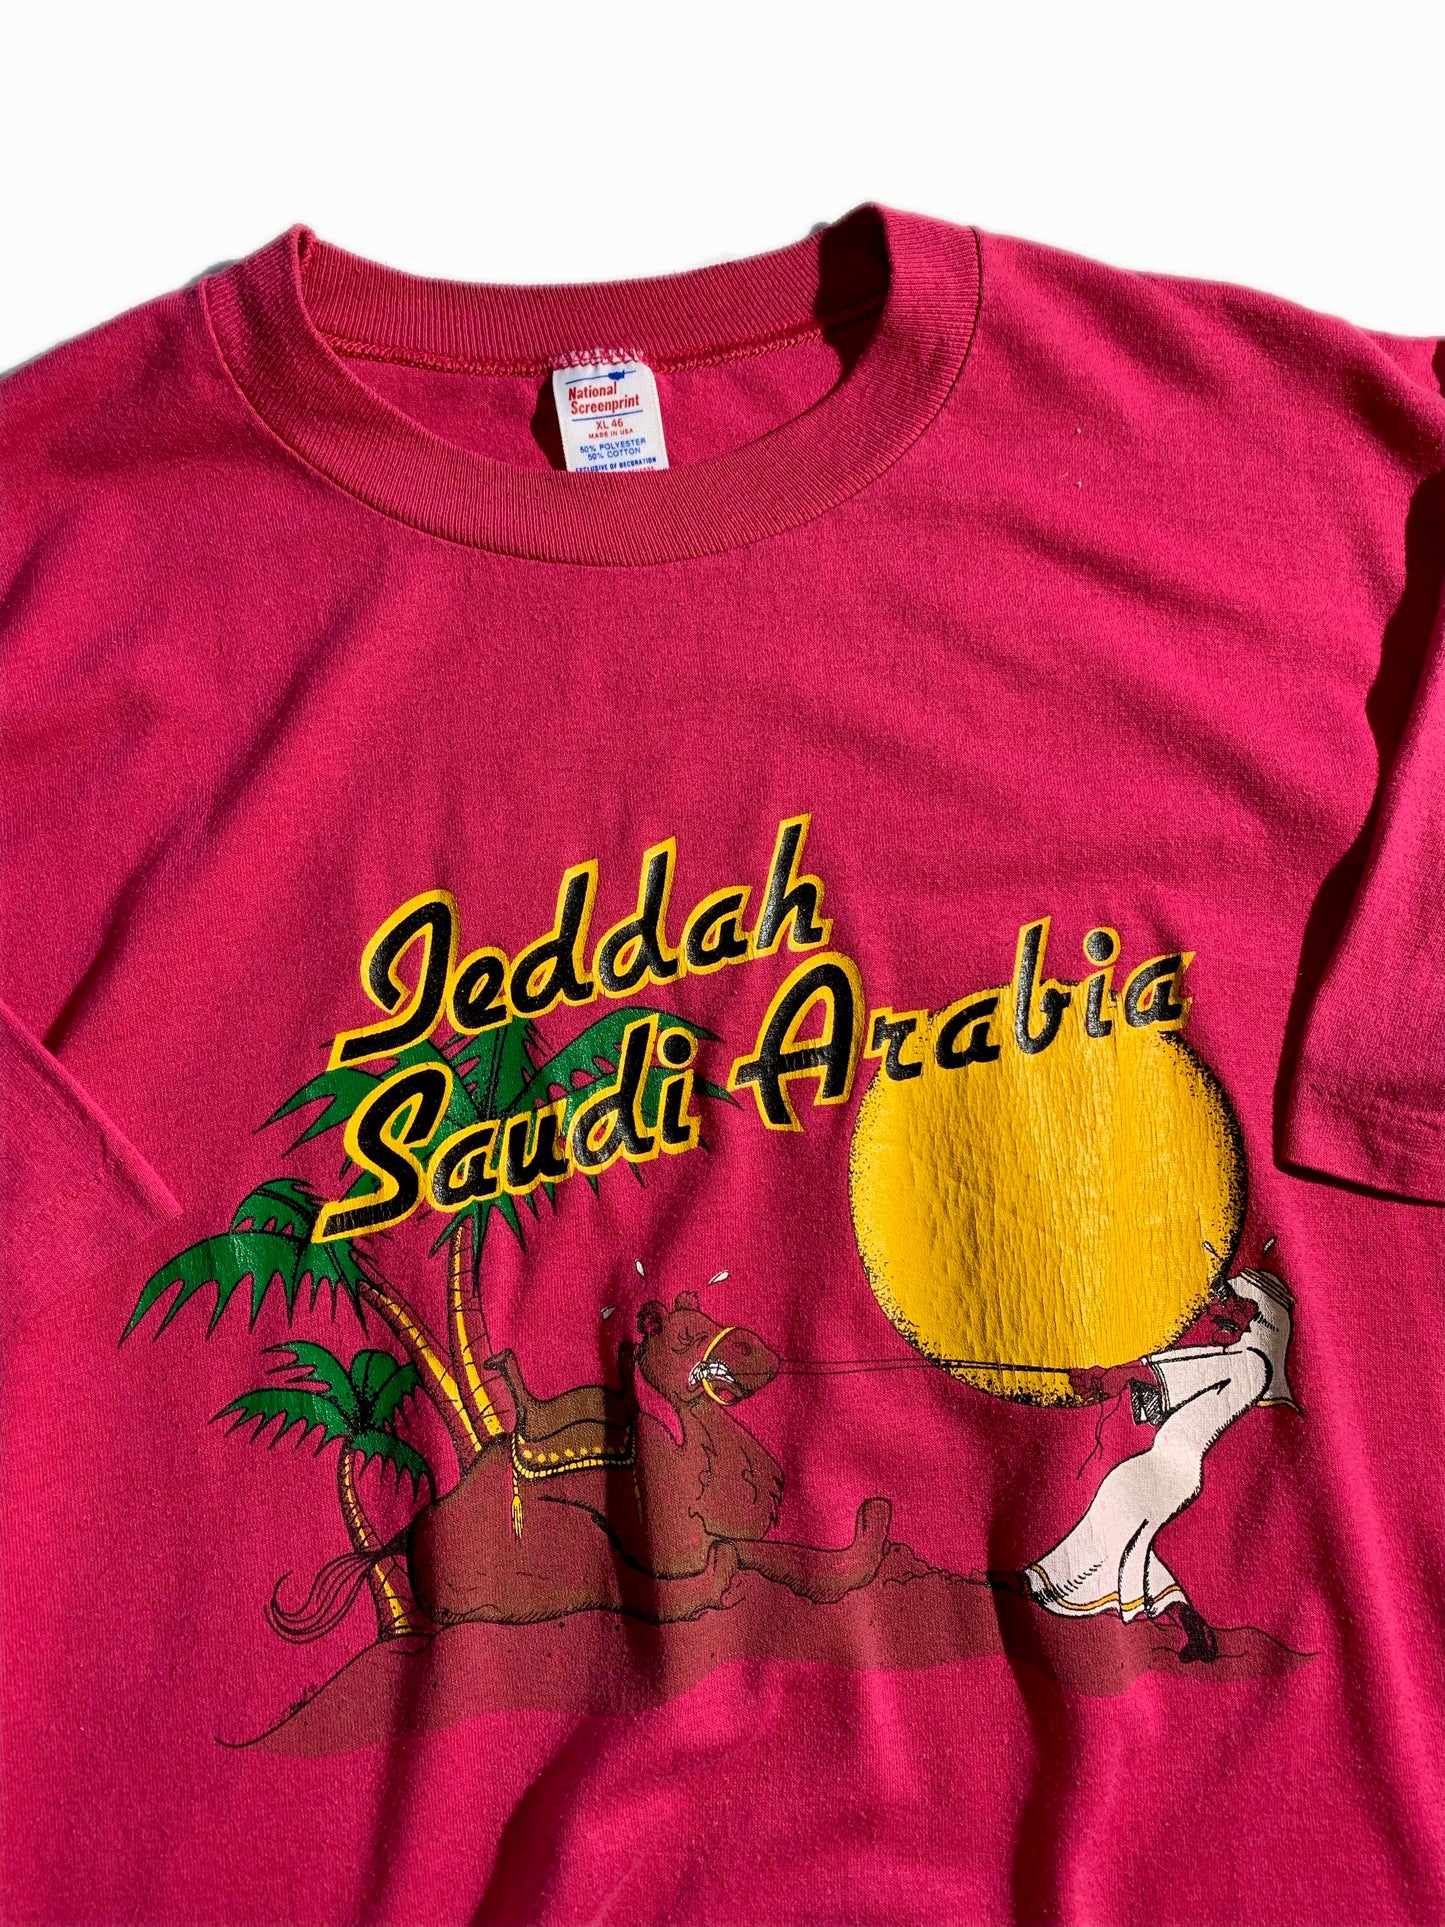 Vintage Jeddah Saudi Arabia T-Shirt Animal Tee